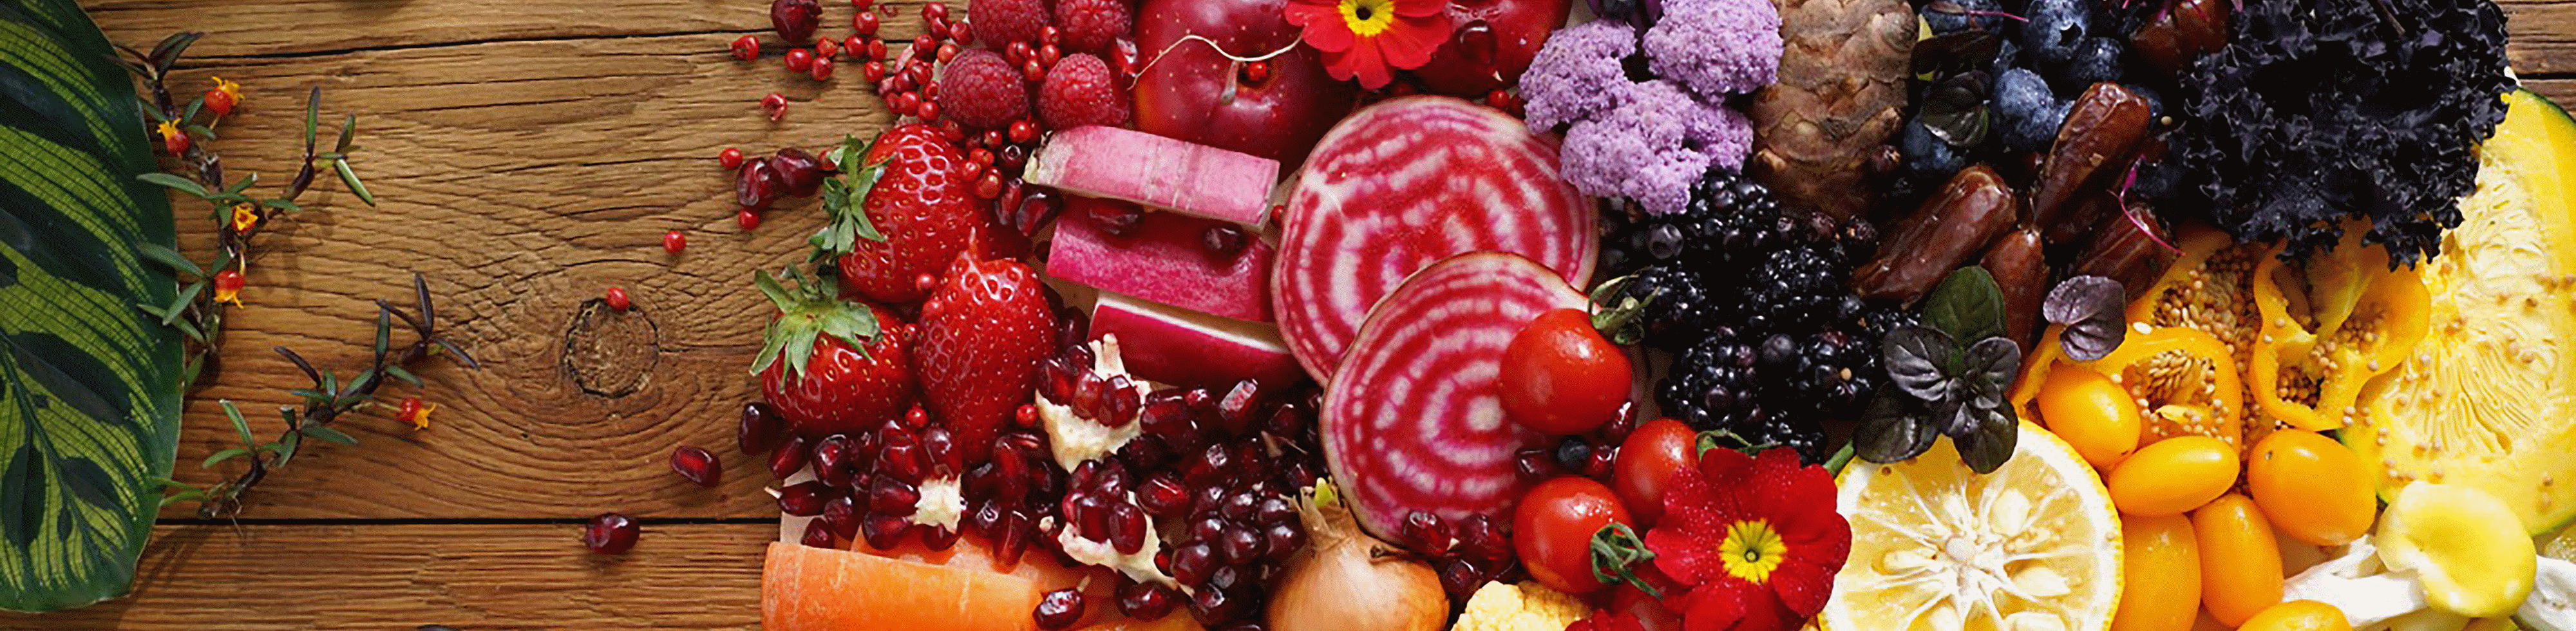 Šiuo fotoaparatu užfiksuotų spalvingų daržovių ir vaisių didelės raiškos visame kadre vaizdas